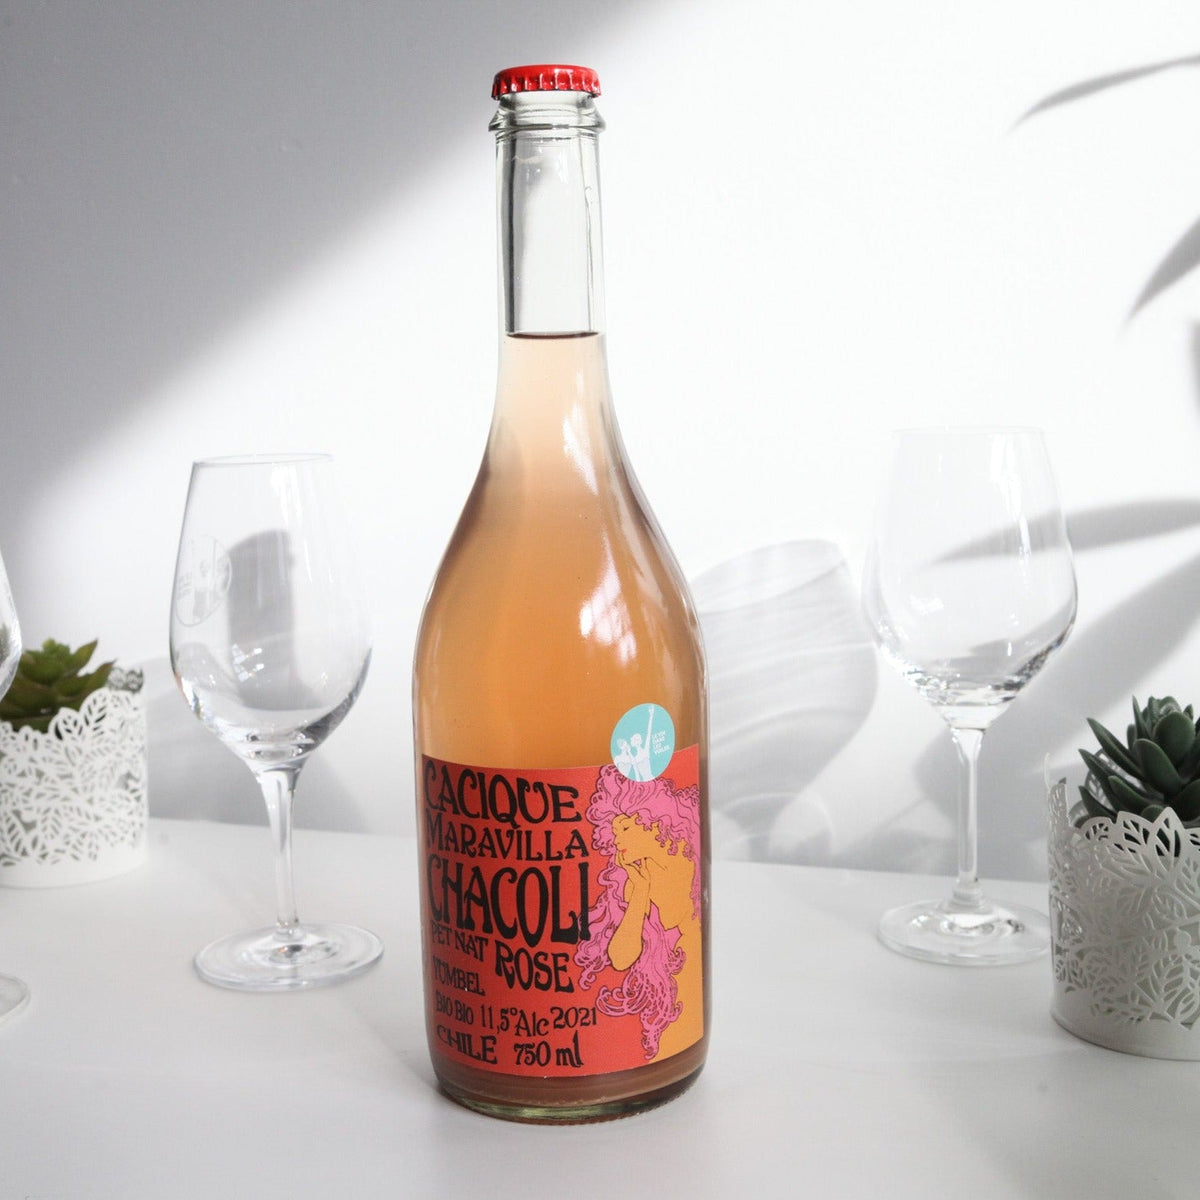 Bouteille de vin nature, pétillant naturel rosé du Chili du domaine Cacique Maravilla: Chacoli rosado.